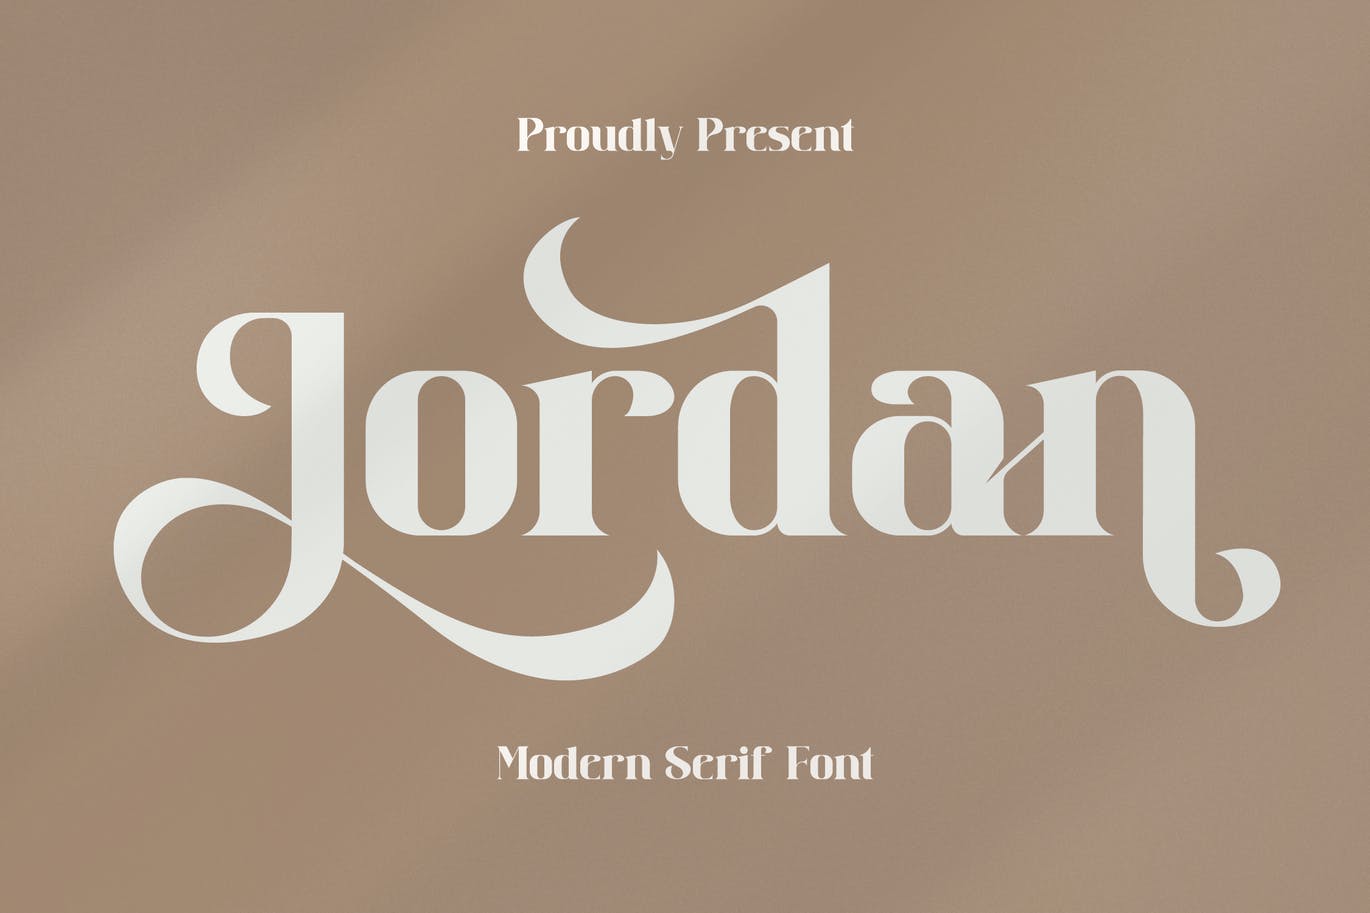 品牌装饰衬线字体素材 Jordan Serif Font 设计素材 第13张